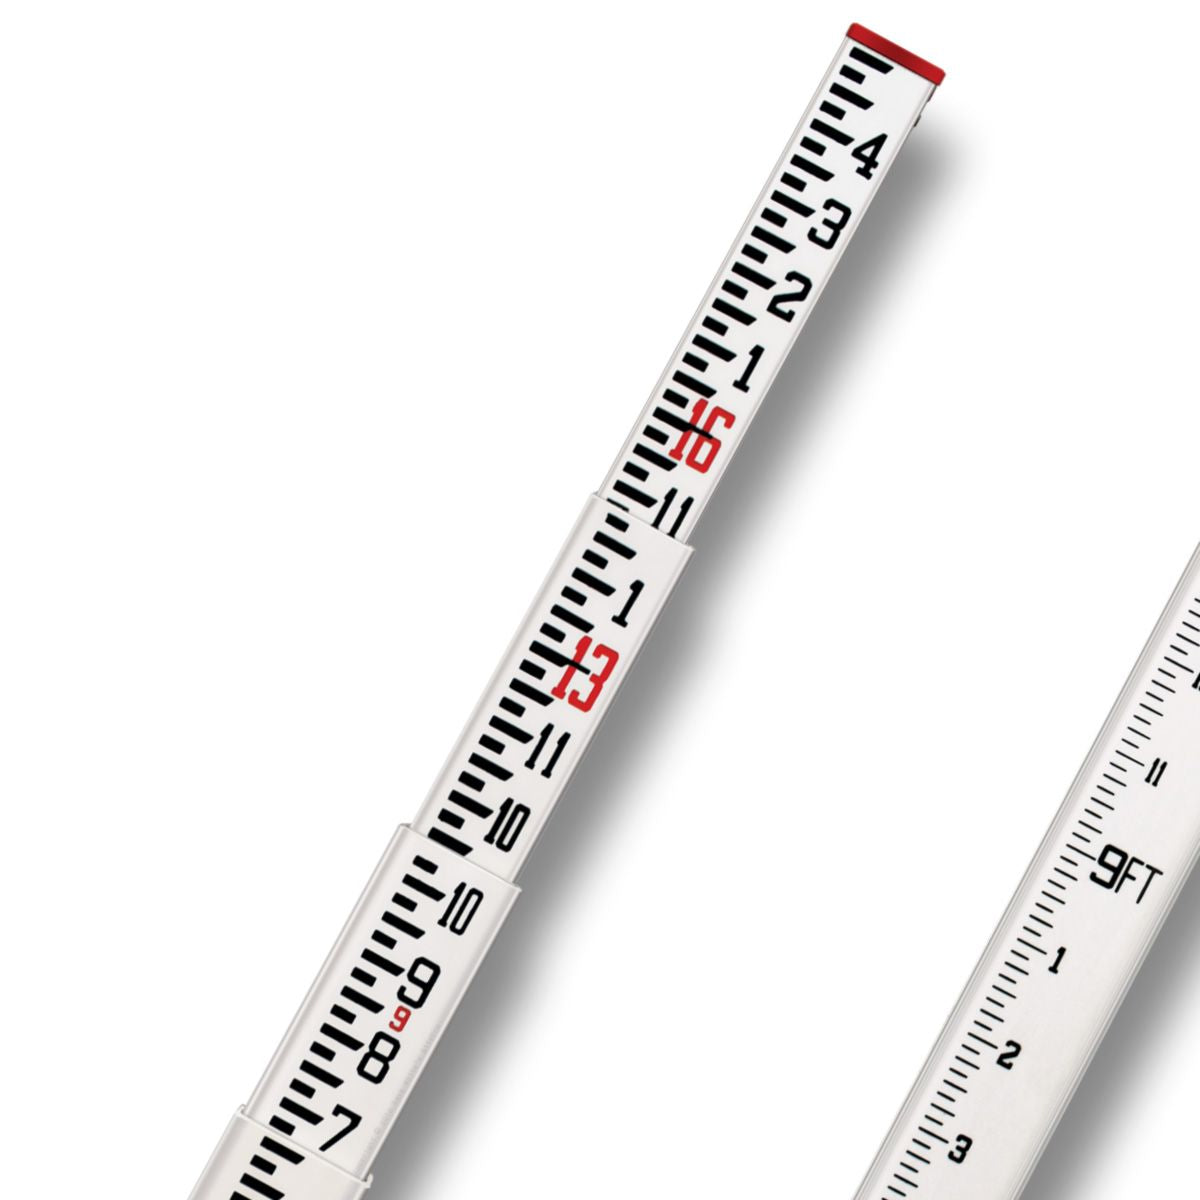 SitePro 11-SCR16-C 16' Fiberglass Grade Rod Inches